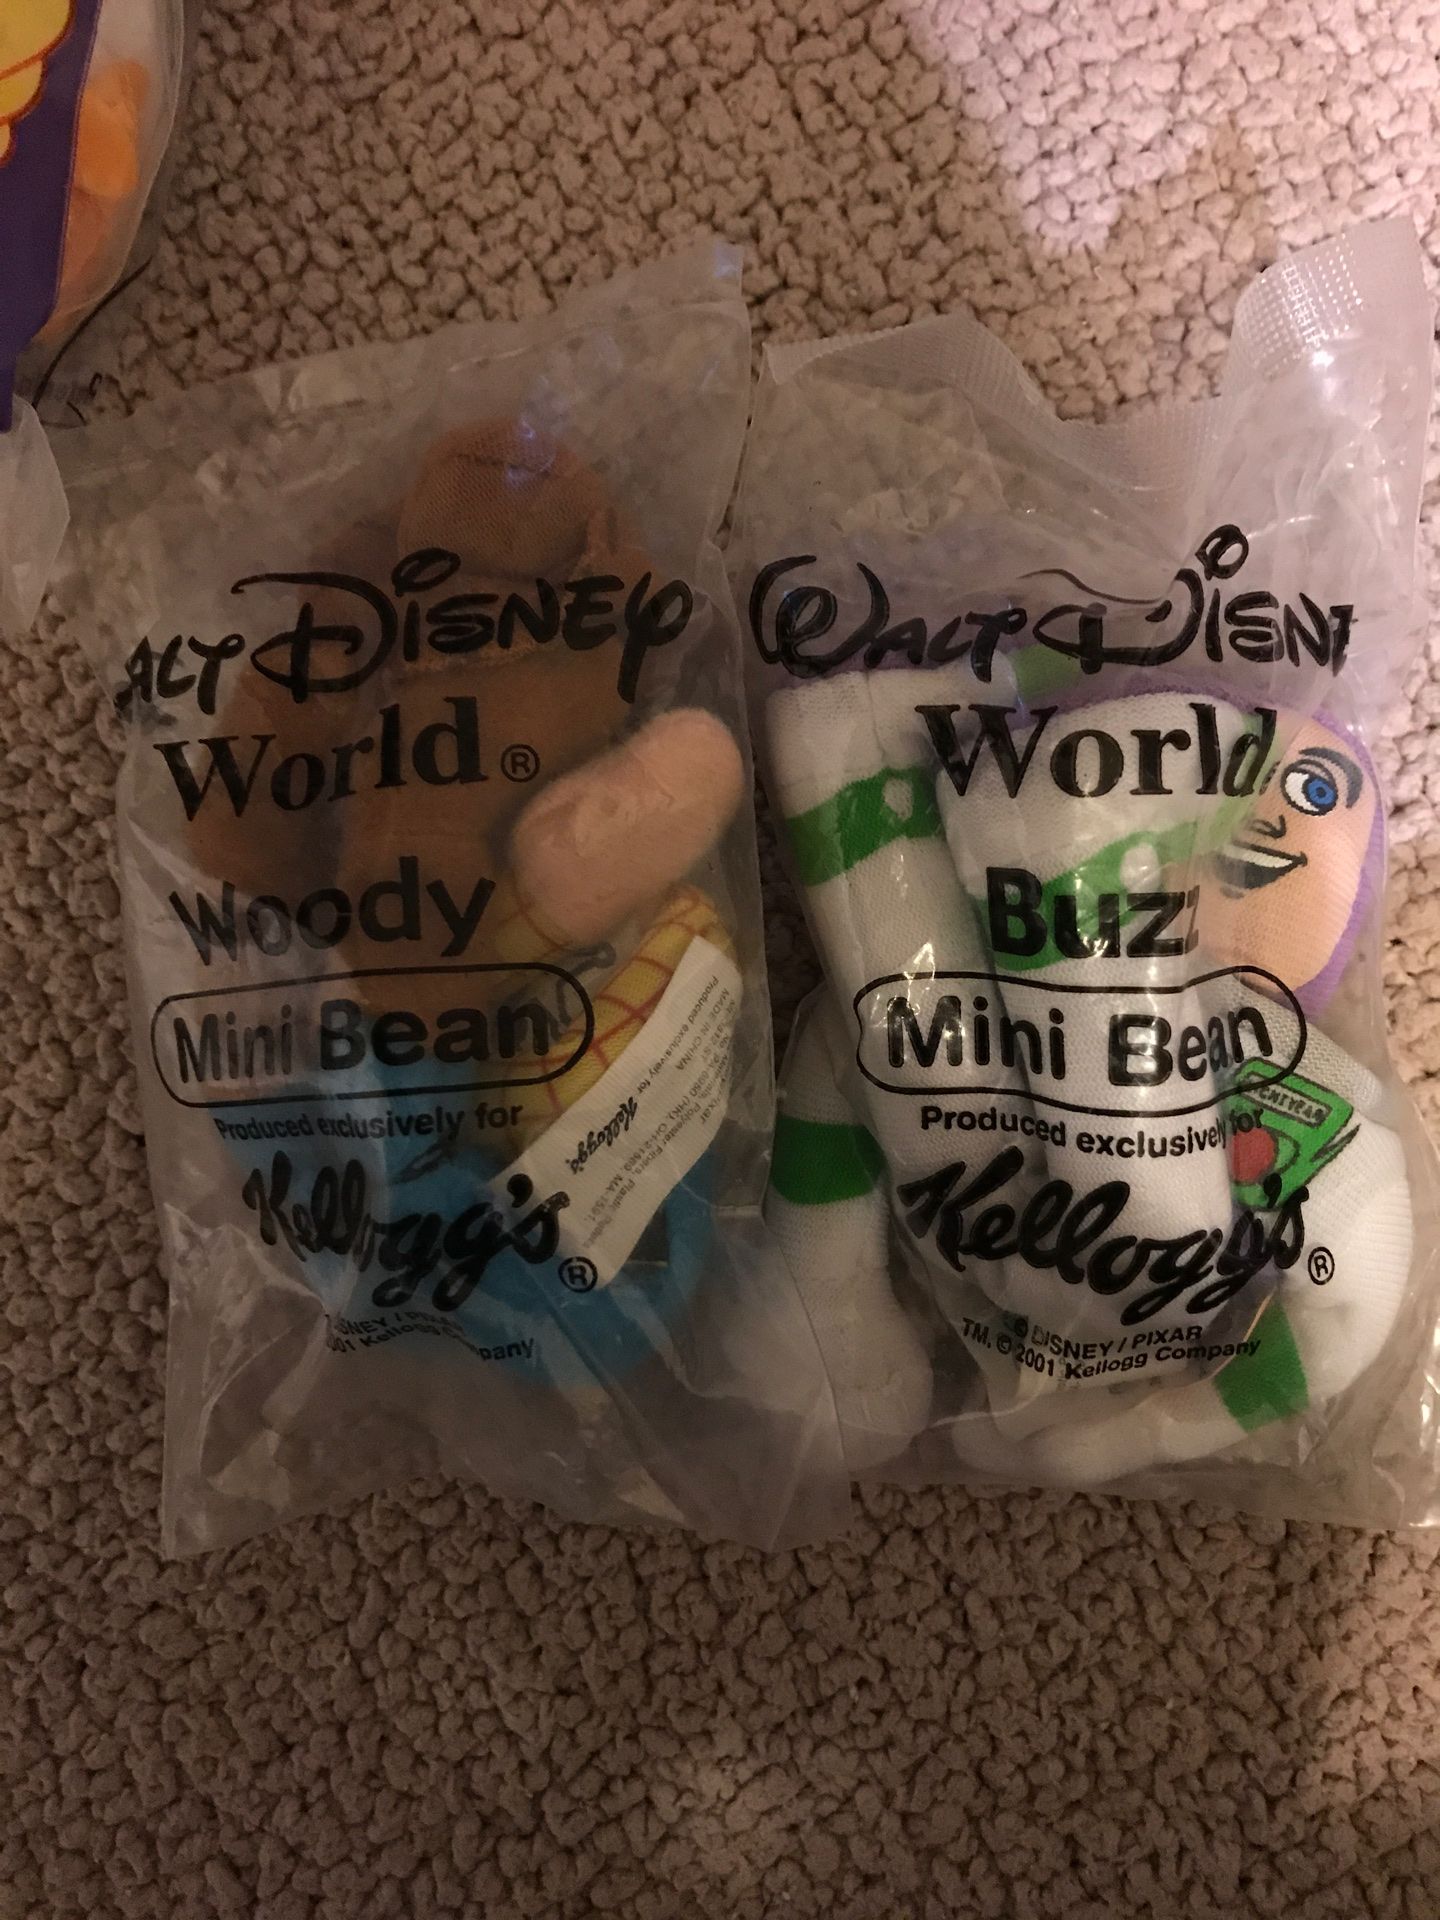 Walt Disney World Woody, Buz mini Beans. And Zazu toy